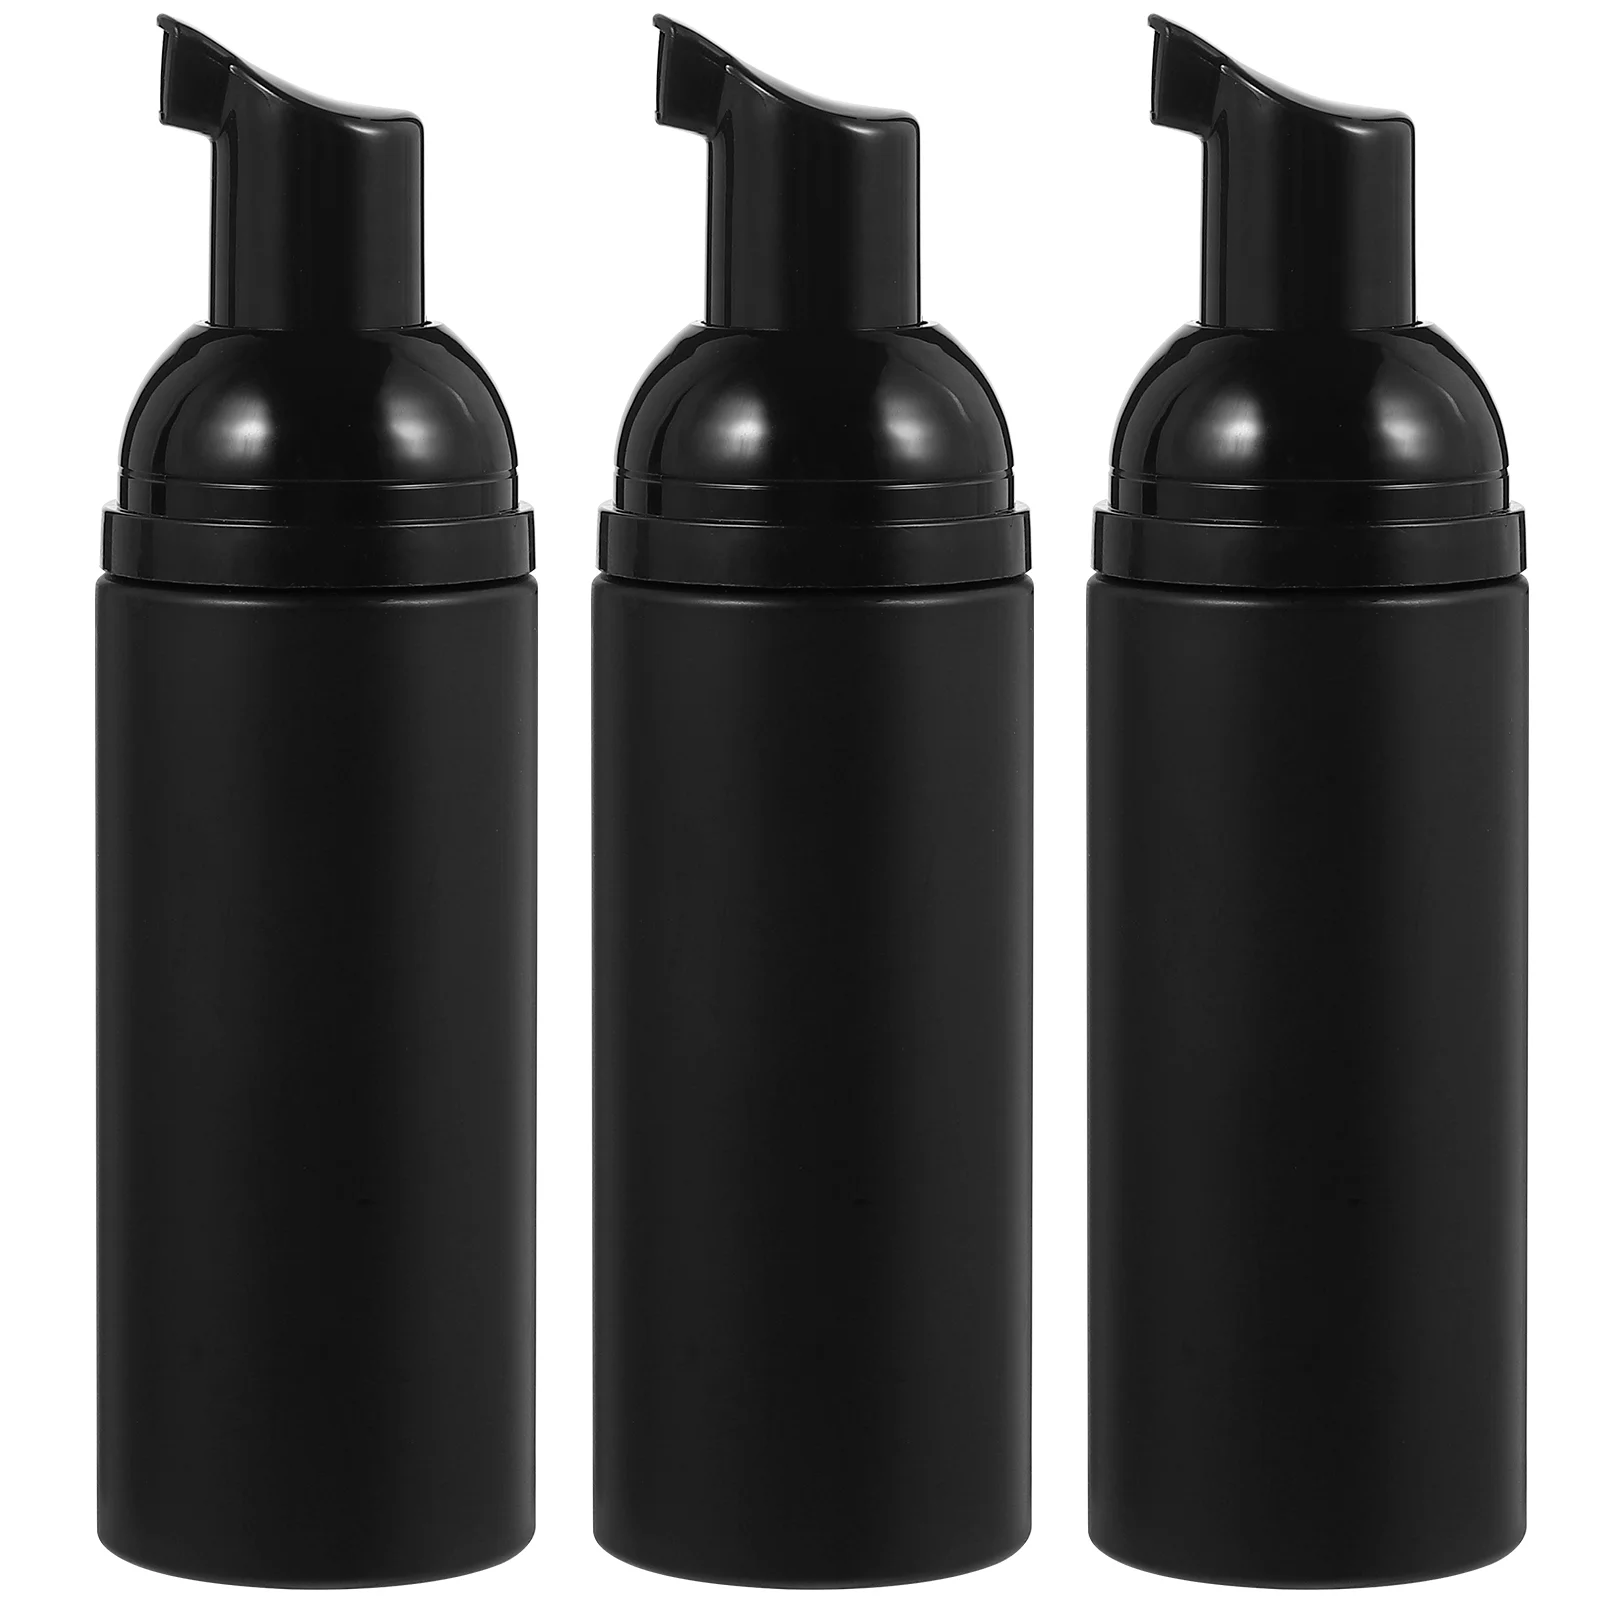 

Travel Size Foaming Pump Bottle Bubble Hand Soap Dispenser Lash Shampoo Bottles